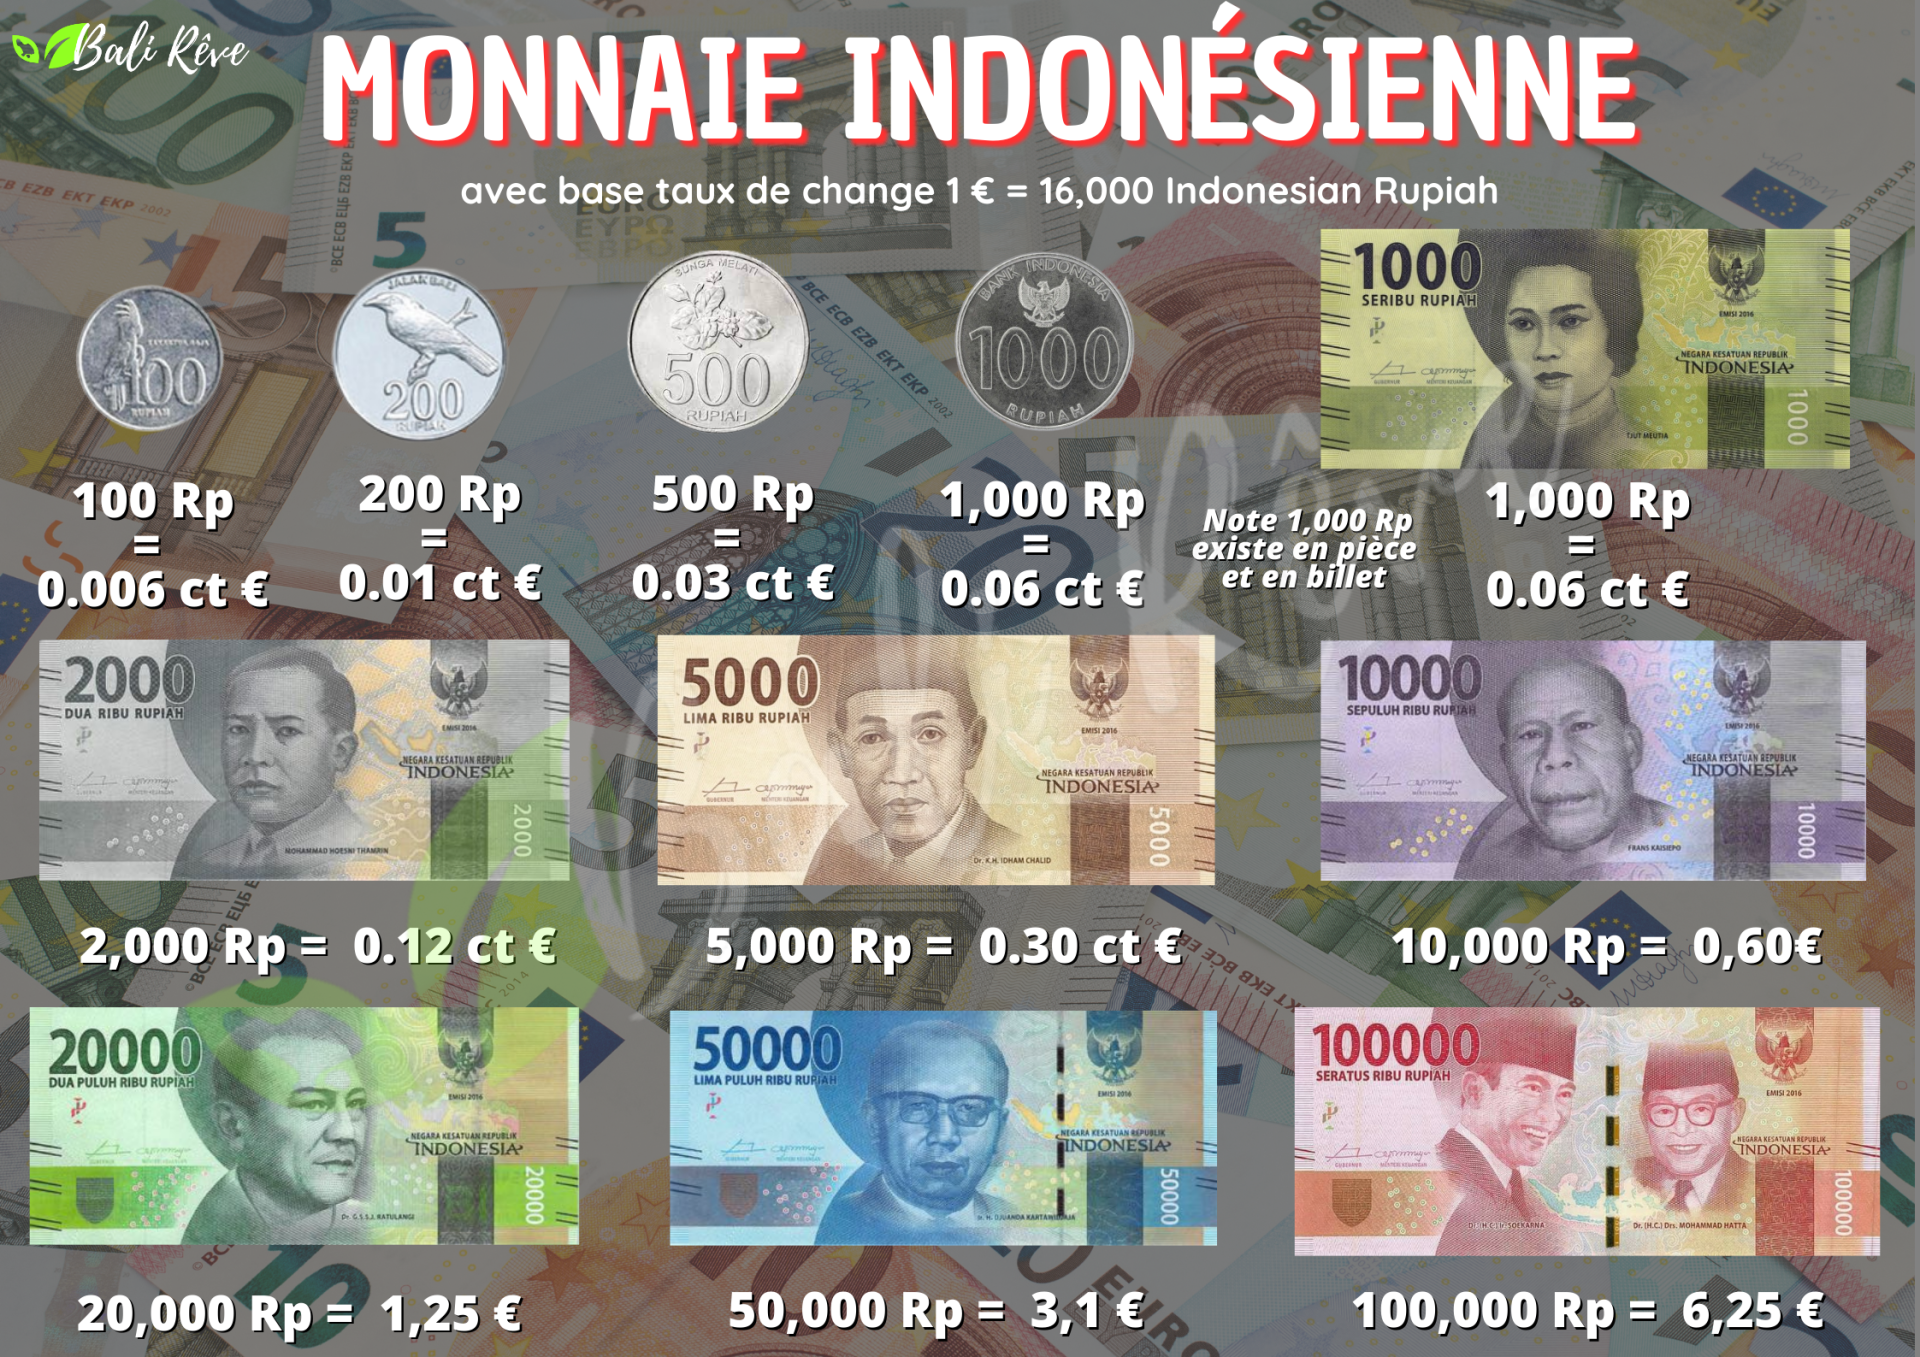 Monnaie indonesienne 2